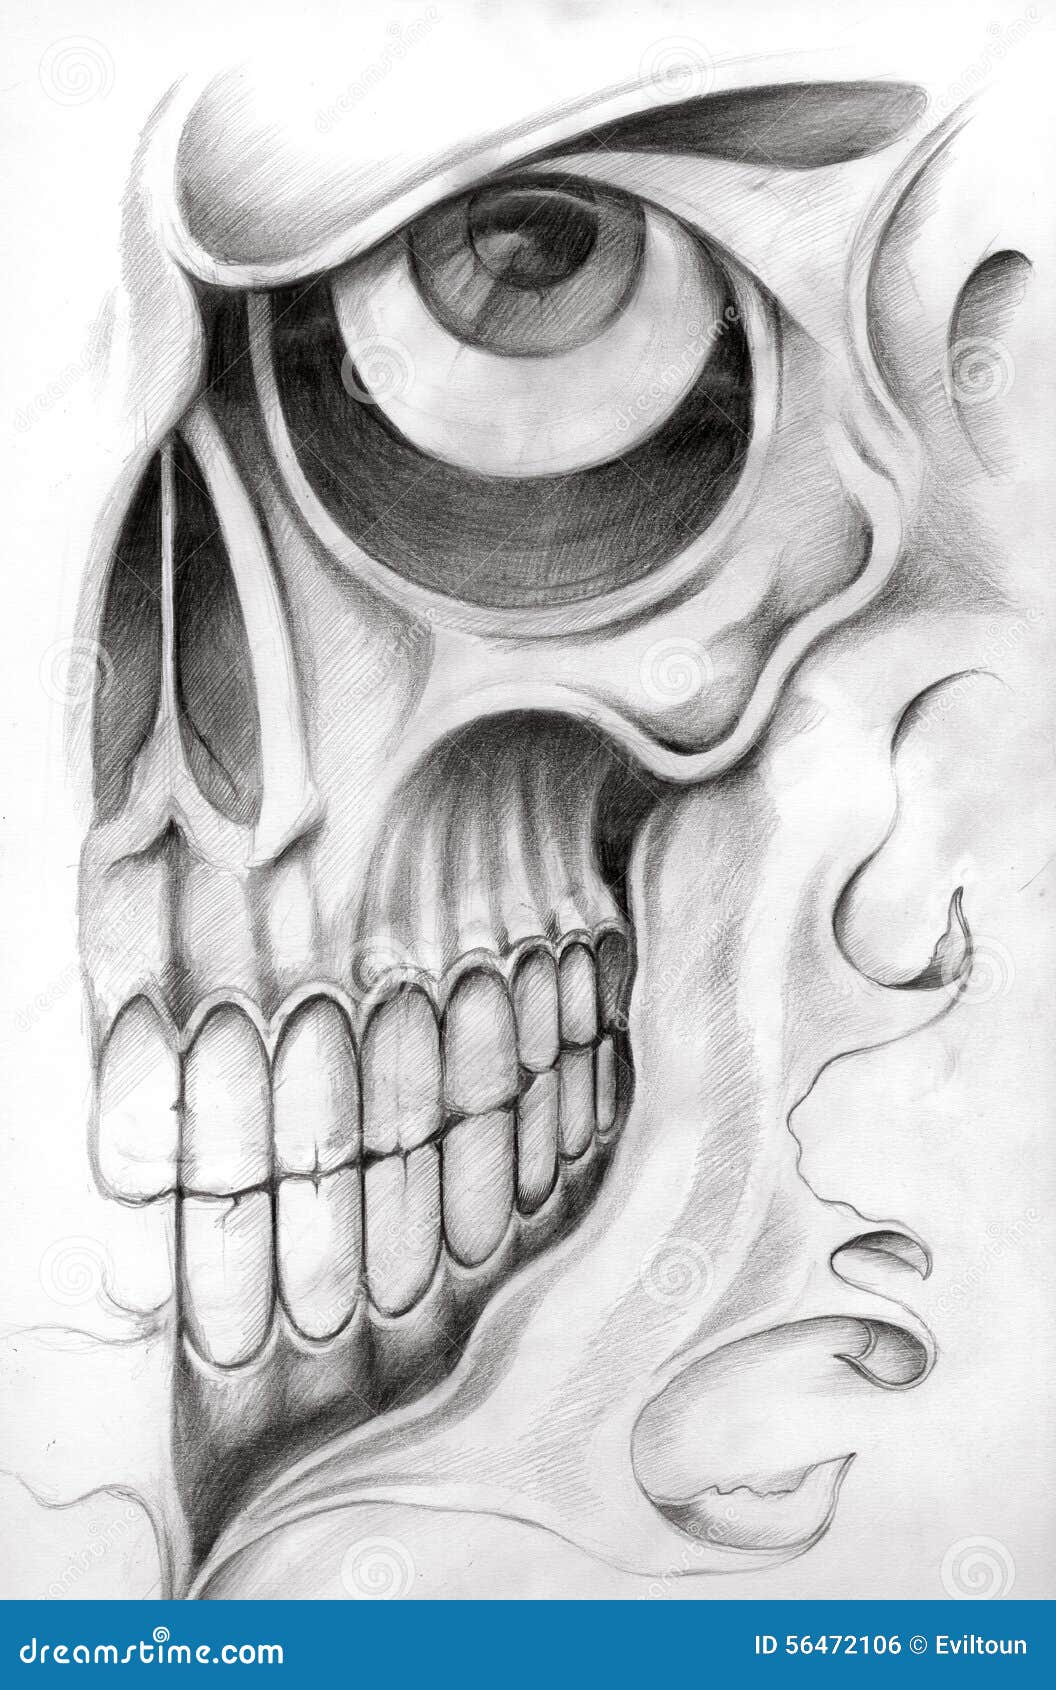 Skull art tattoo. stock illustration. Illustration of black - 56472106